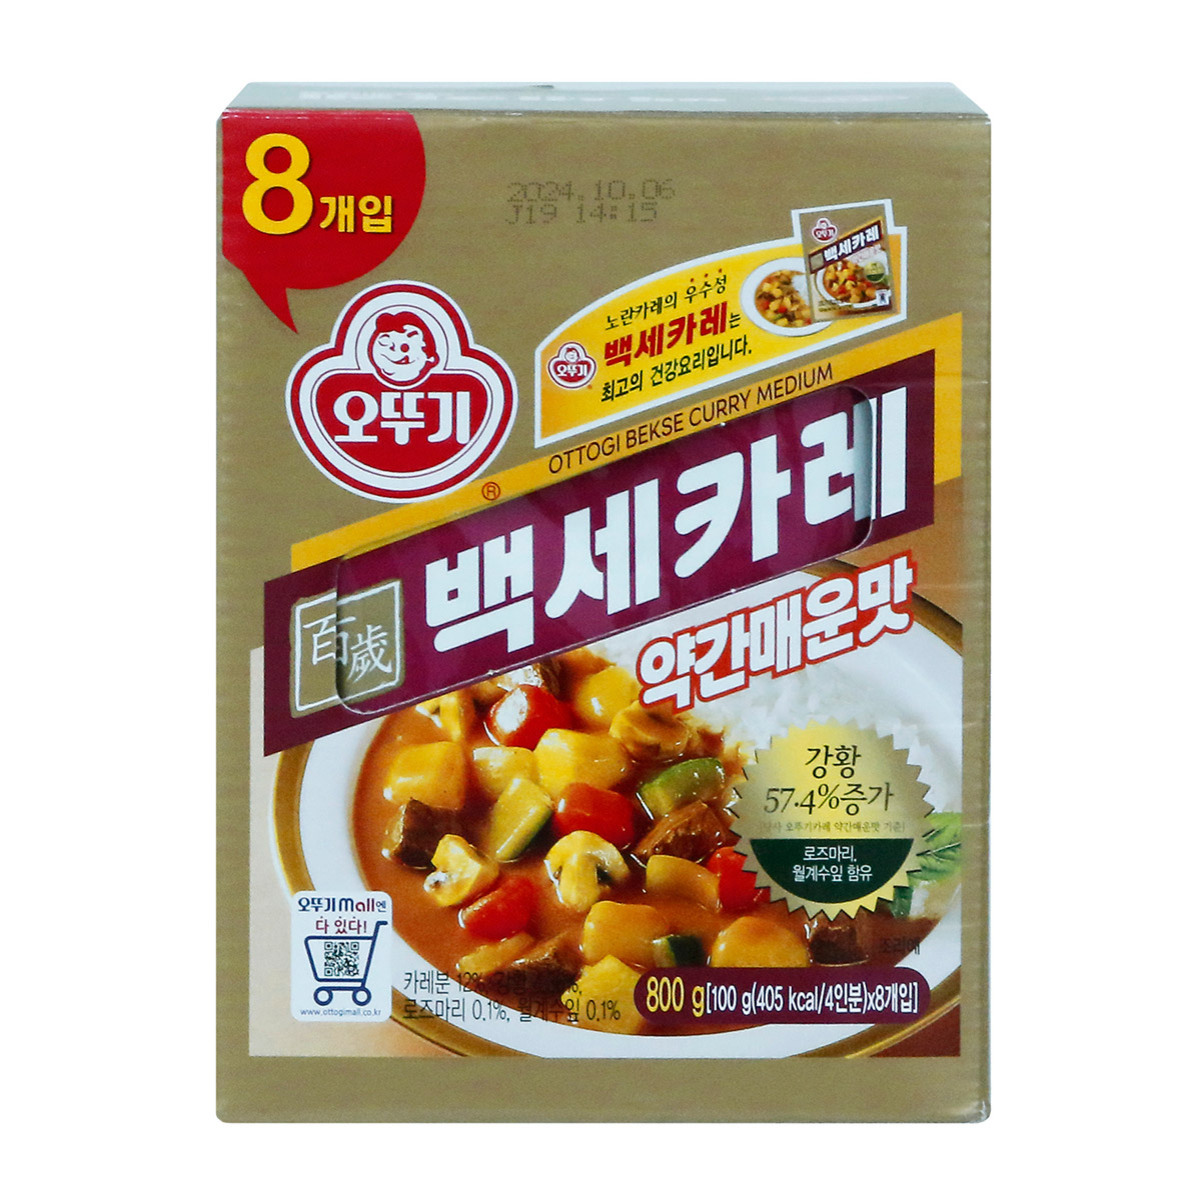 오뚜기 백세카레(약간매운맛) 100g x 8 / 최소구매 2